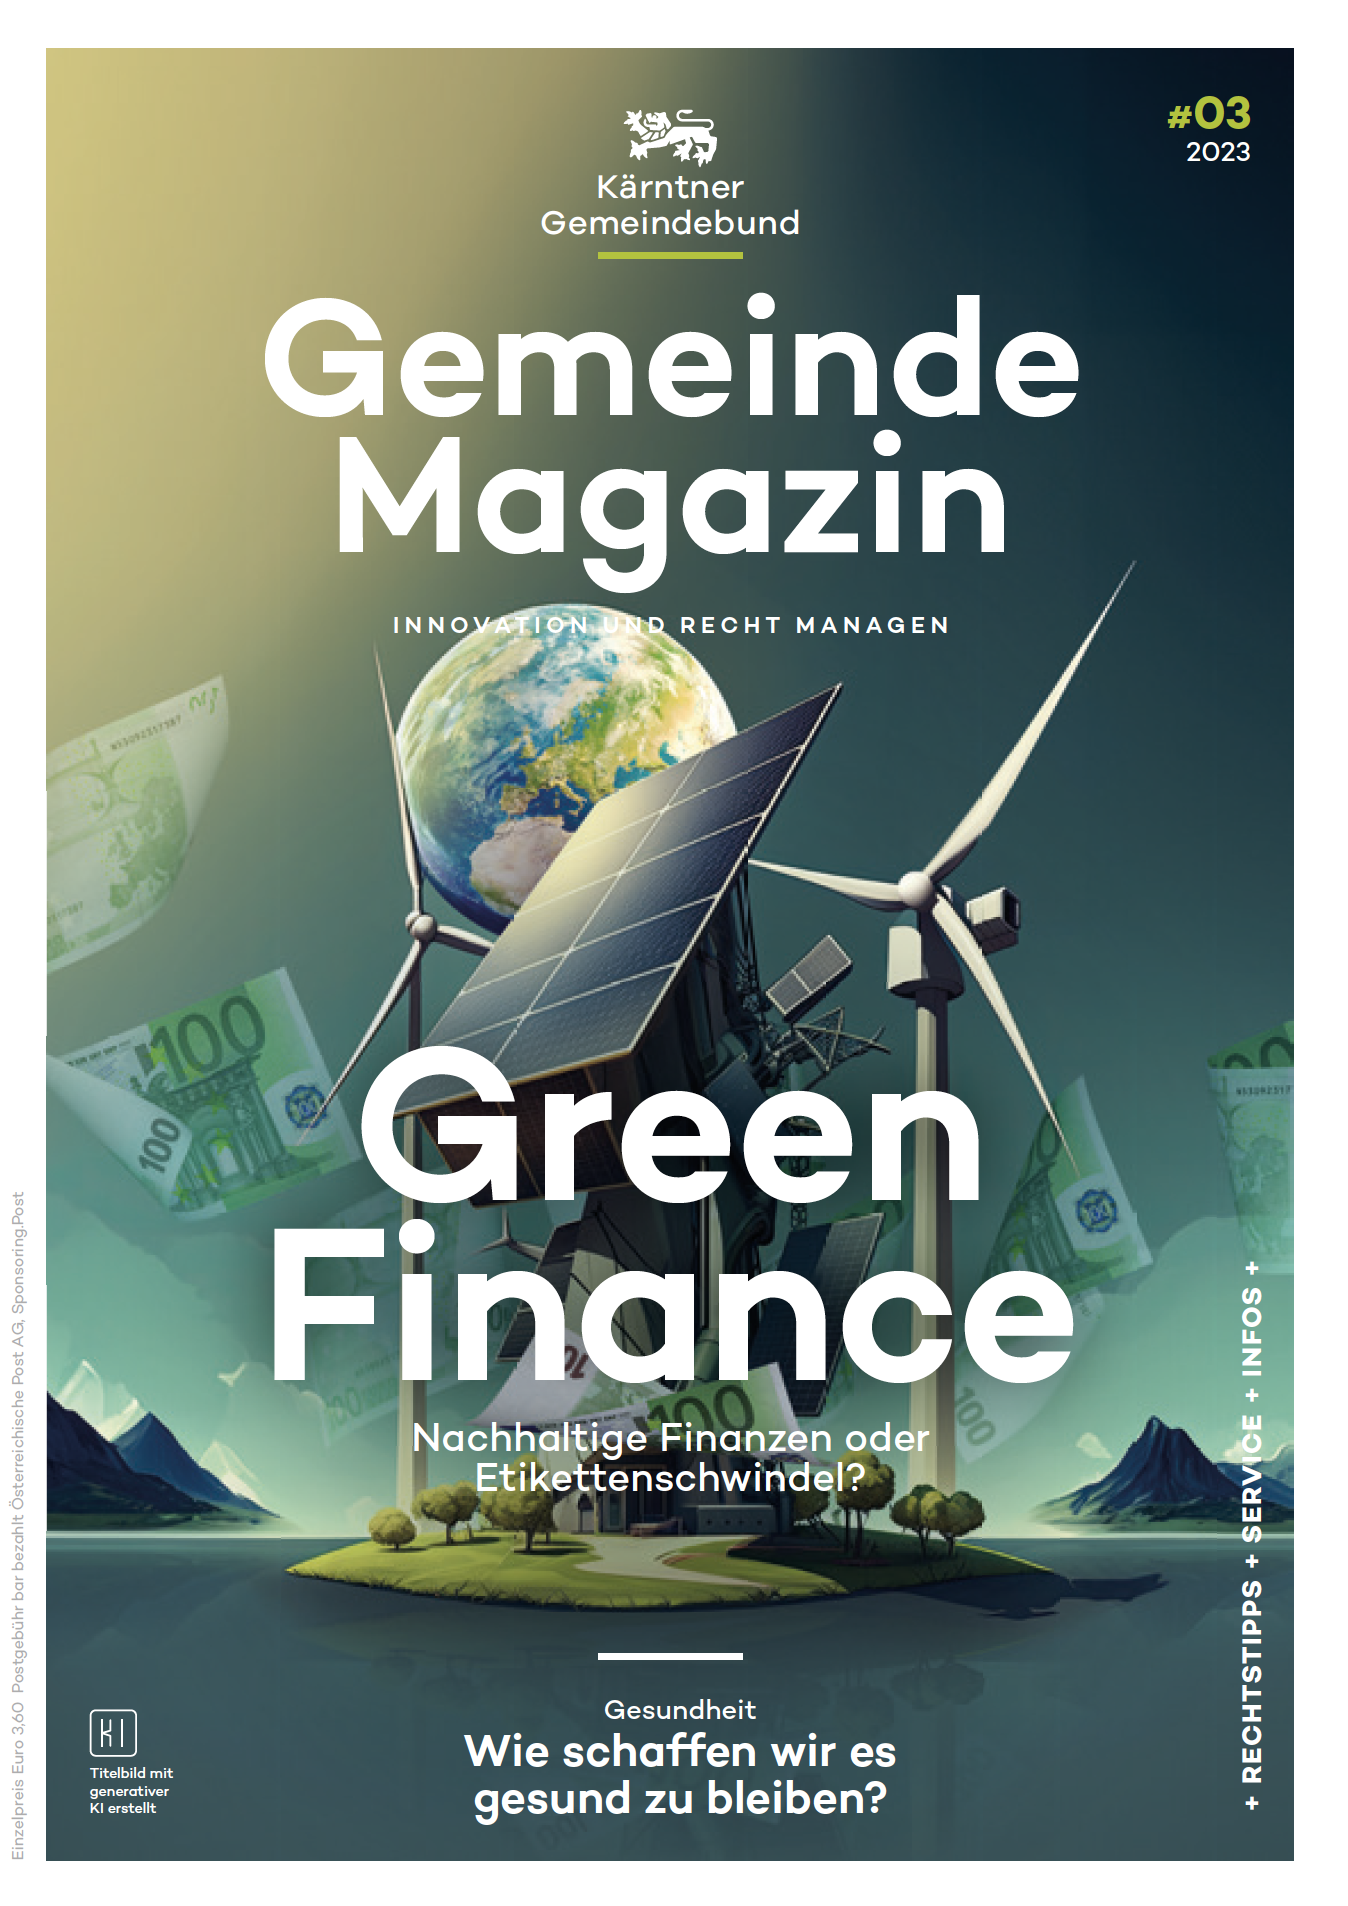 Kärntner Gemeindebund Gemeindemagazin Ausgabe 03 von 2023 zum Thema Green Finance